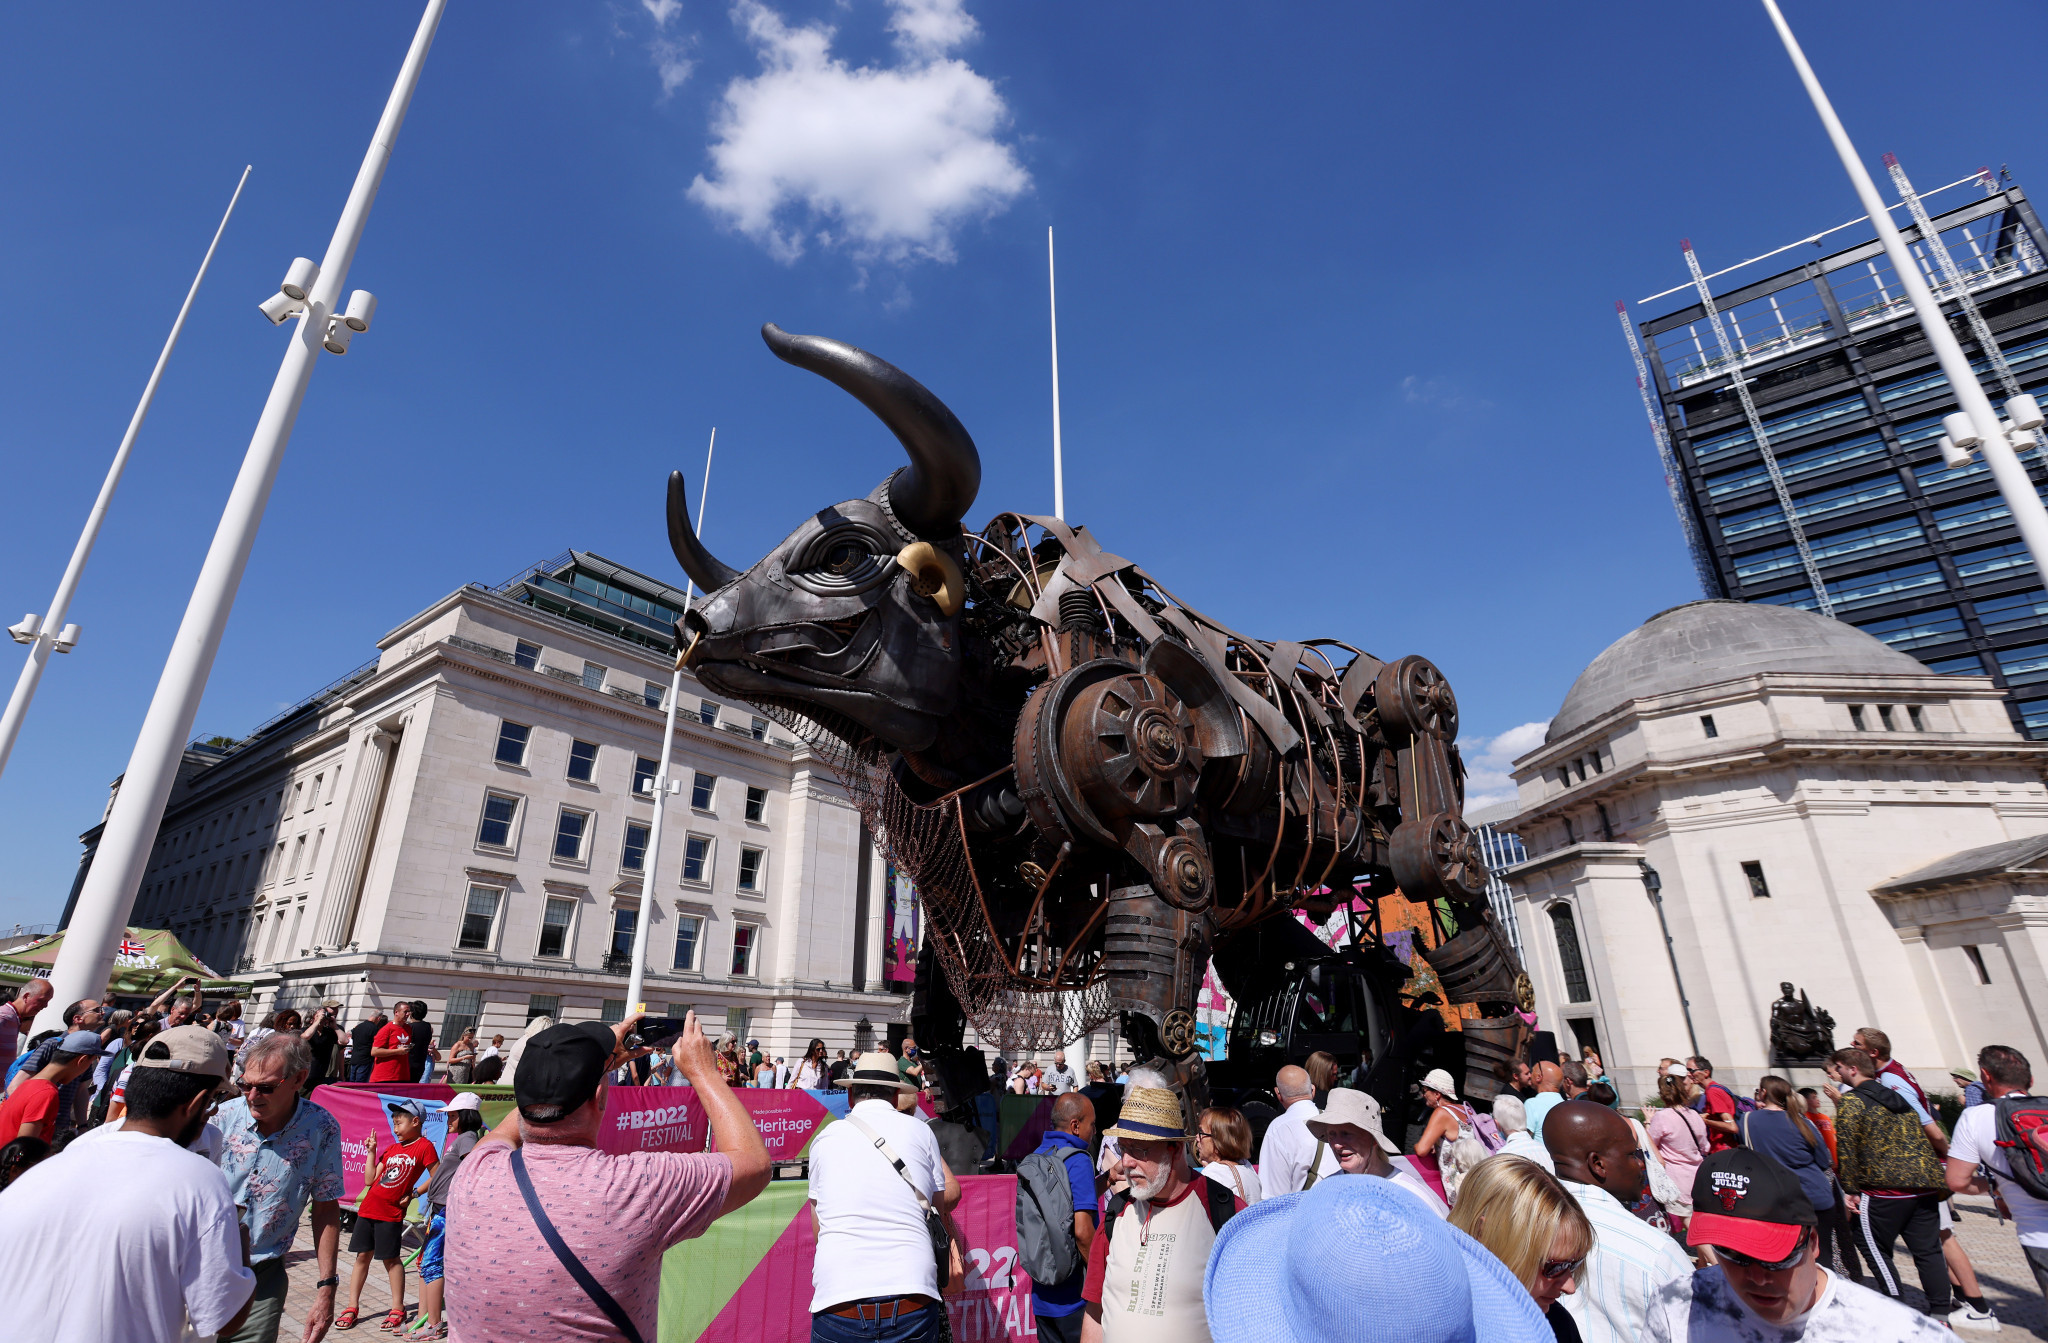 Birmingham's "Raging Bull" set for return to city in spring